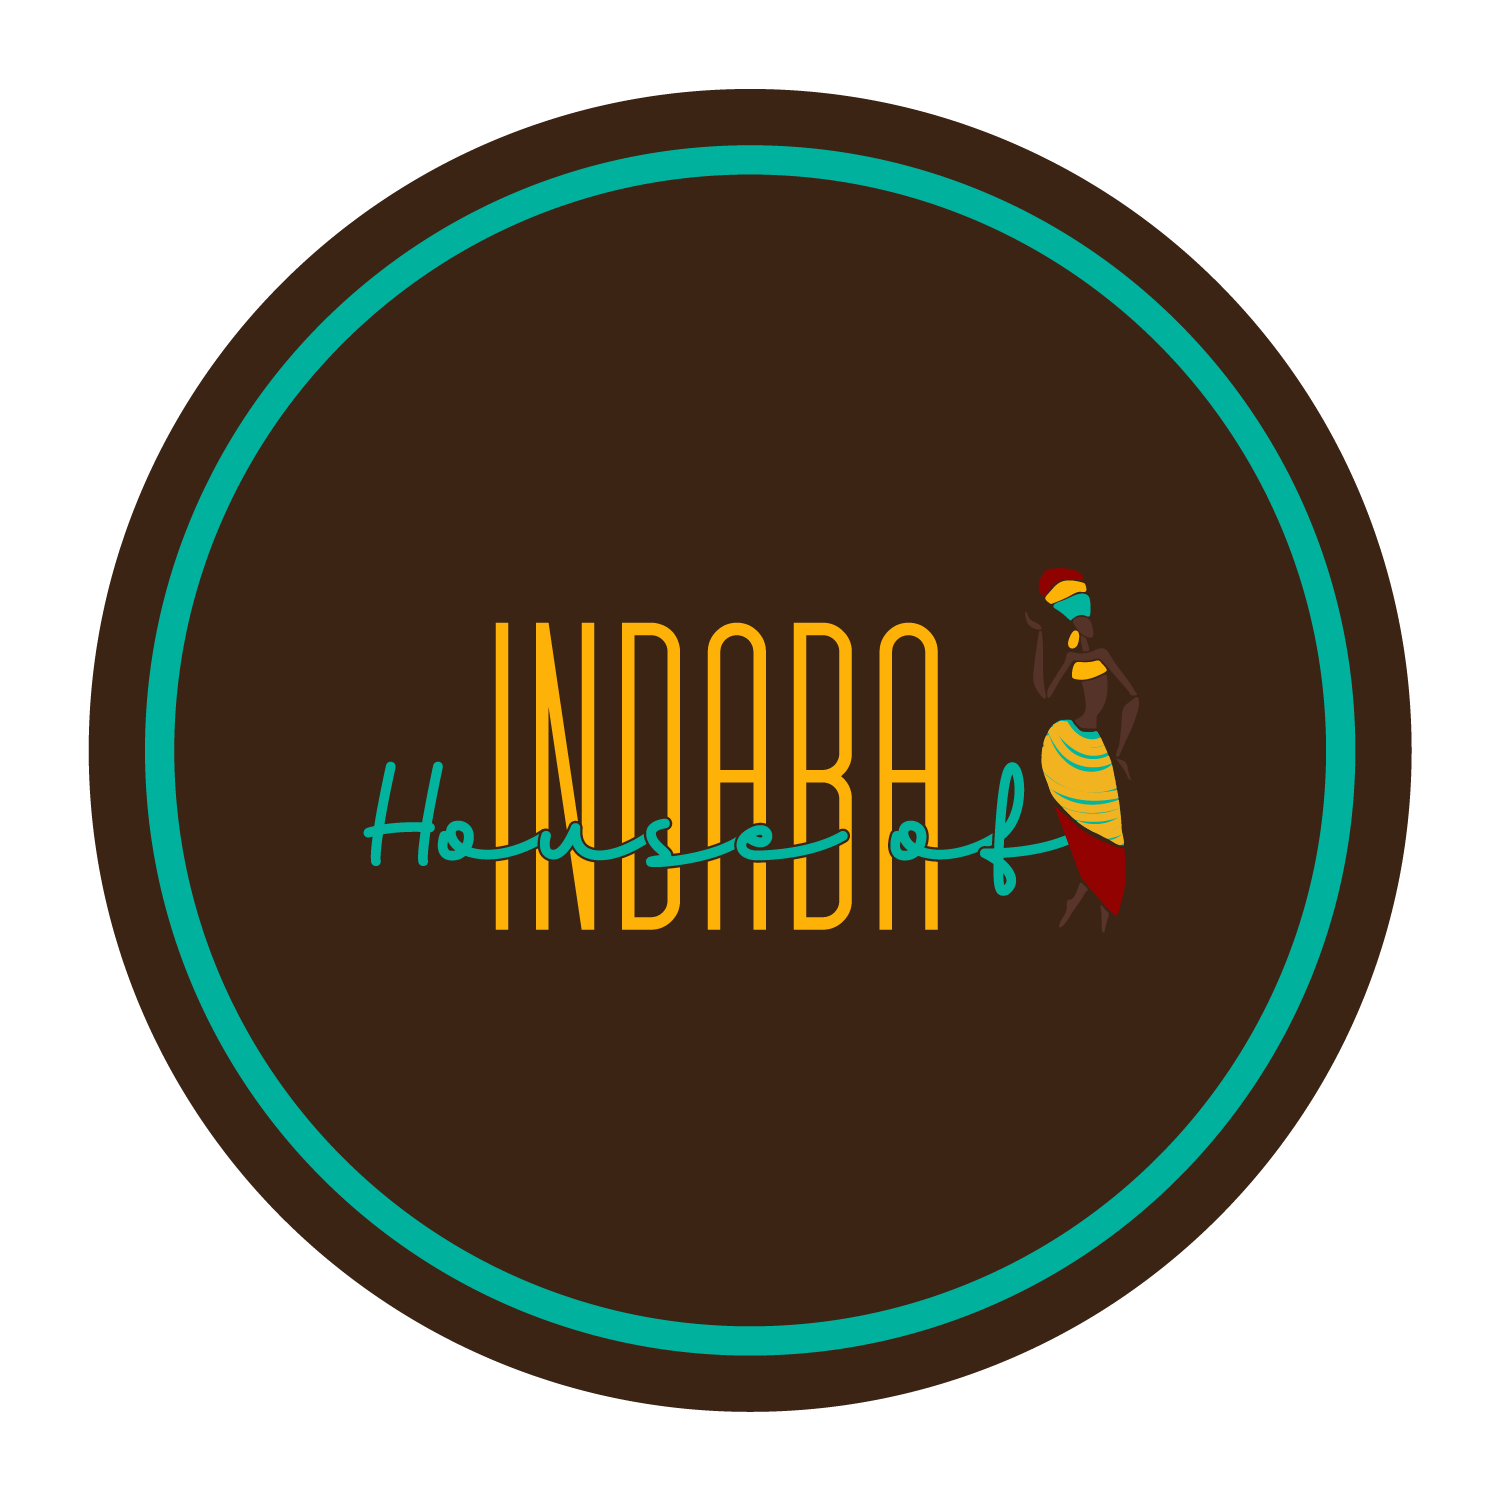 House of Indaba